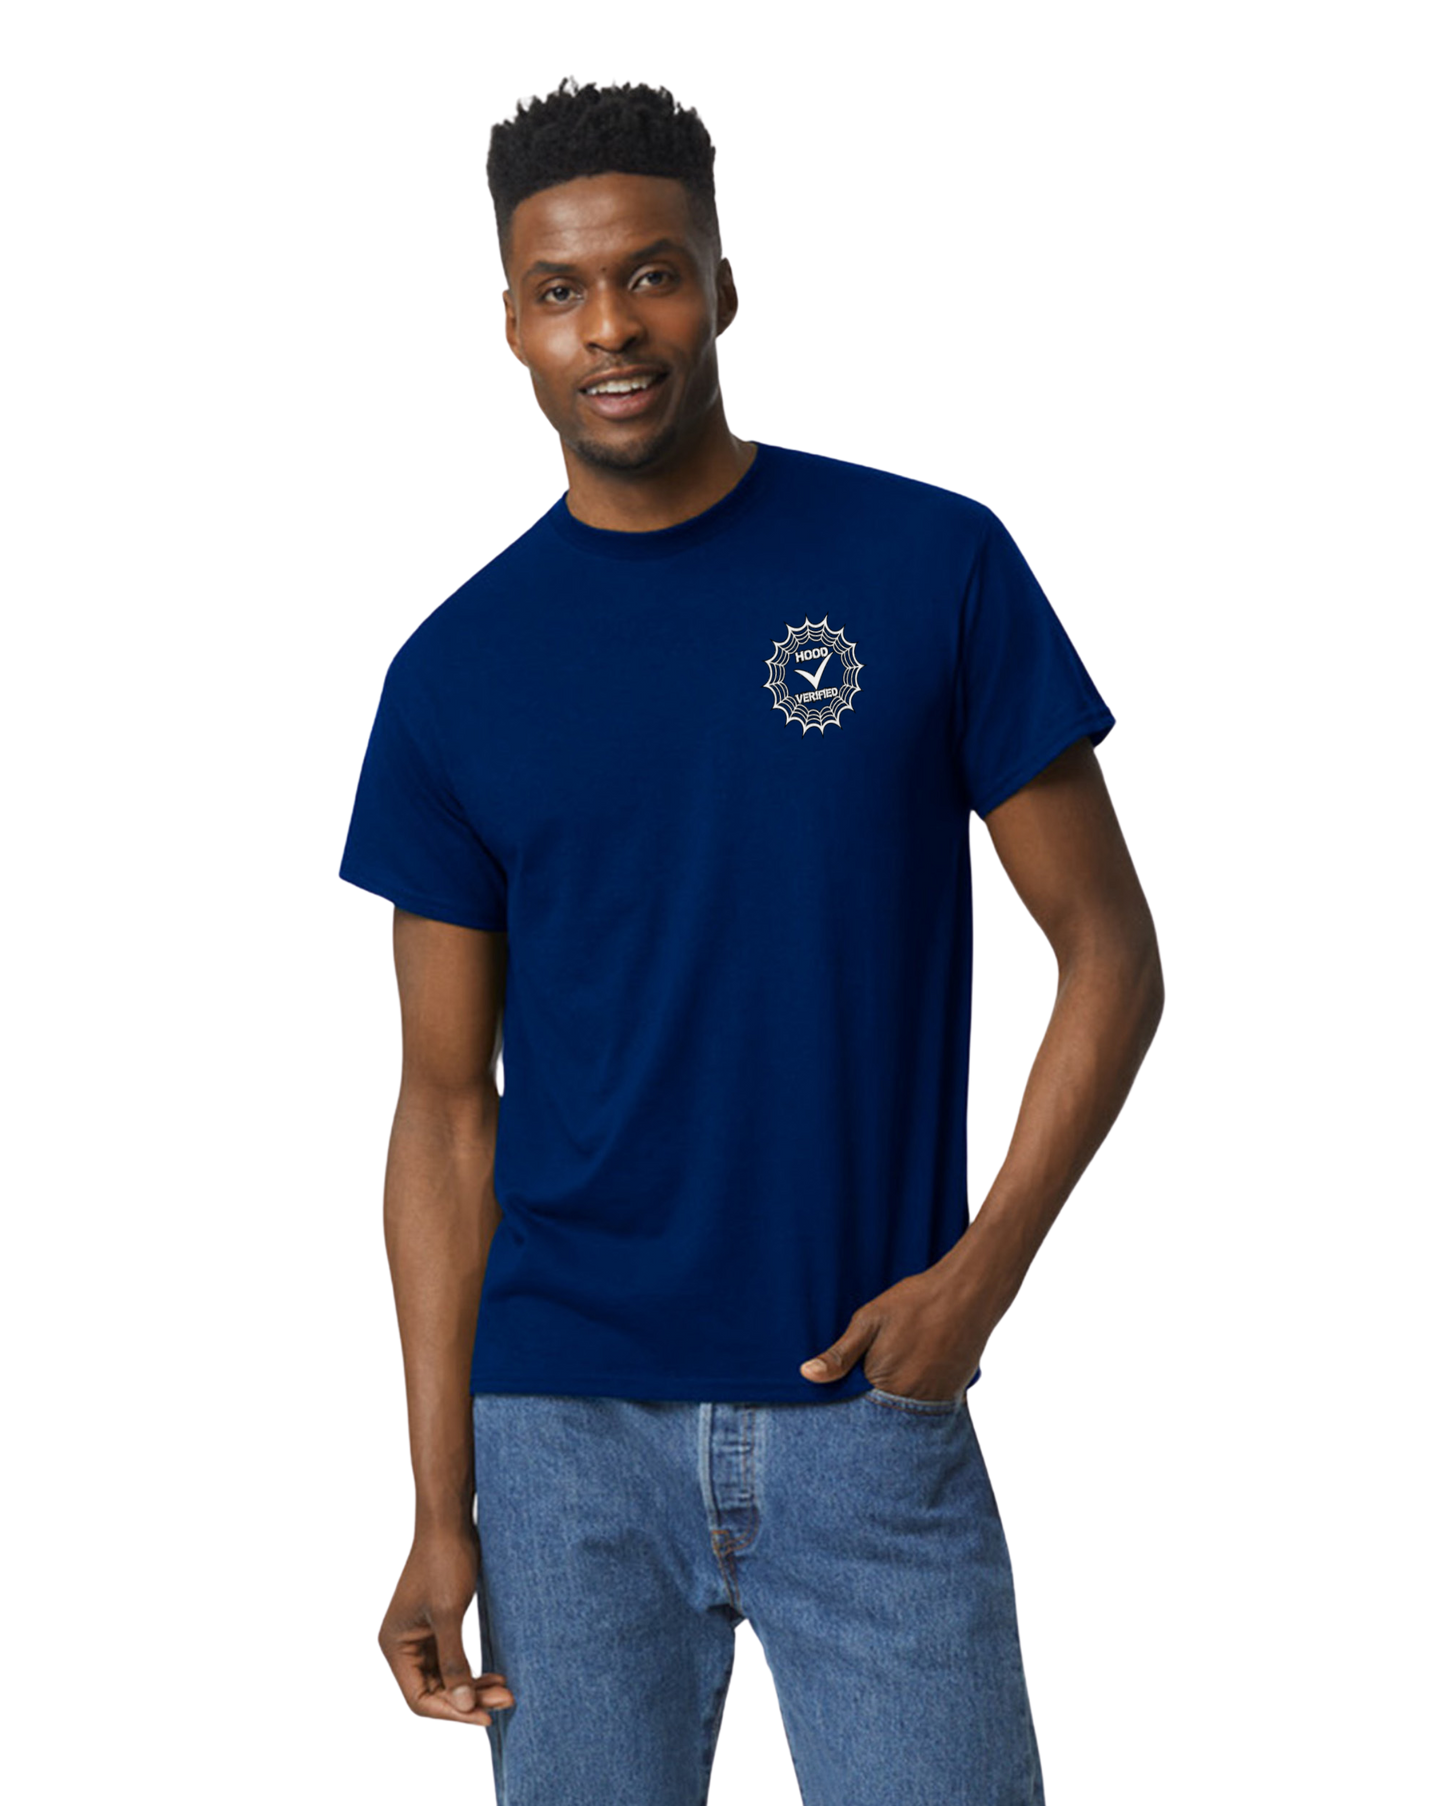 "Collector" Navy Blue Short sleeve T-shirt